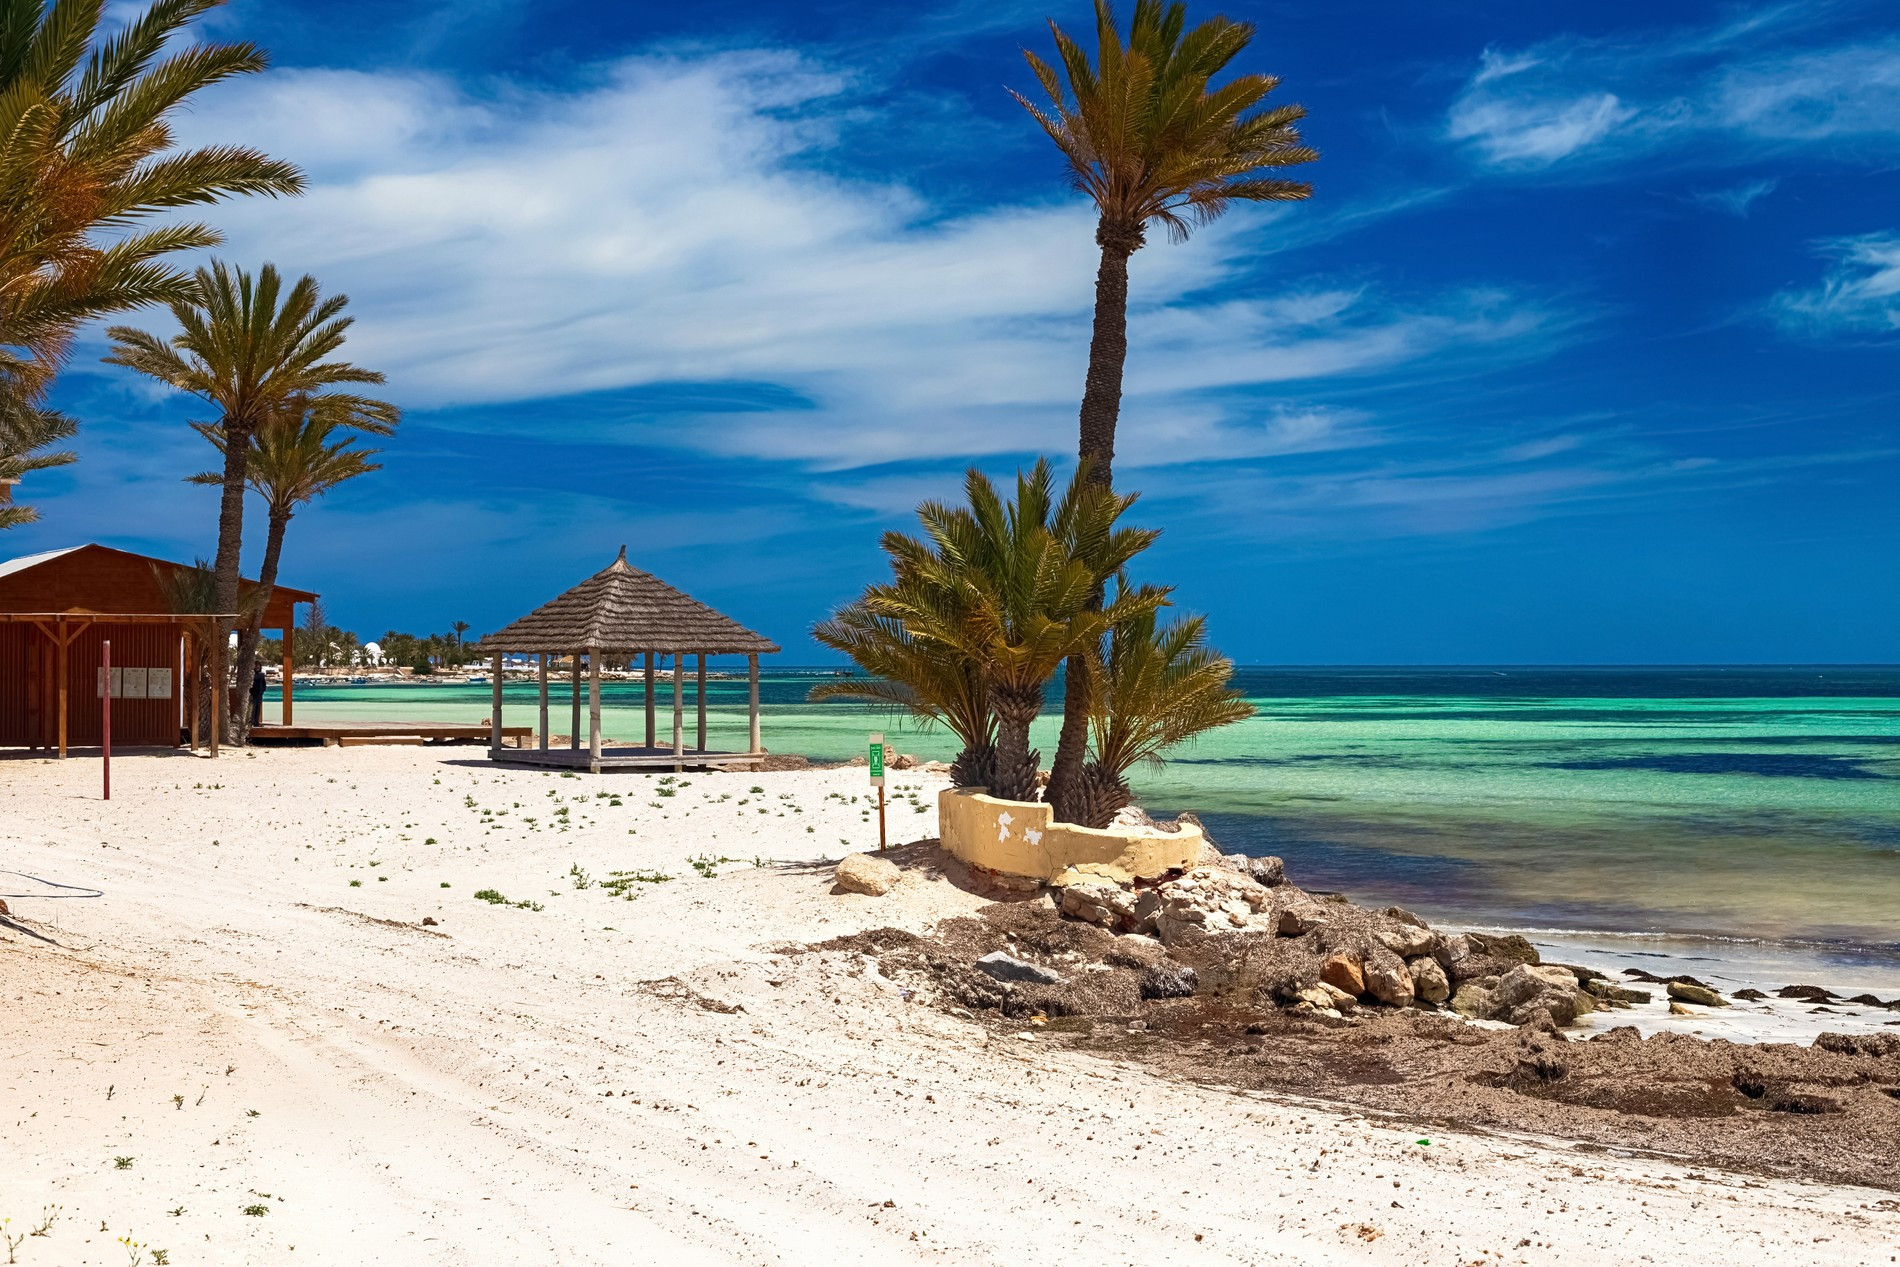 Пляж в Тунисе
Фото: Getty Images